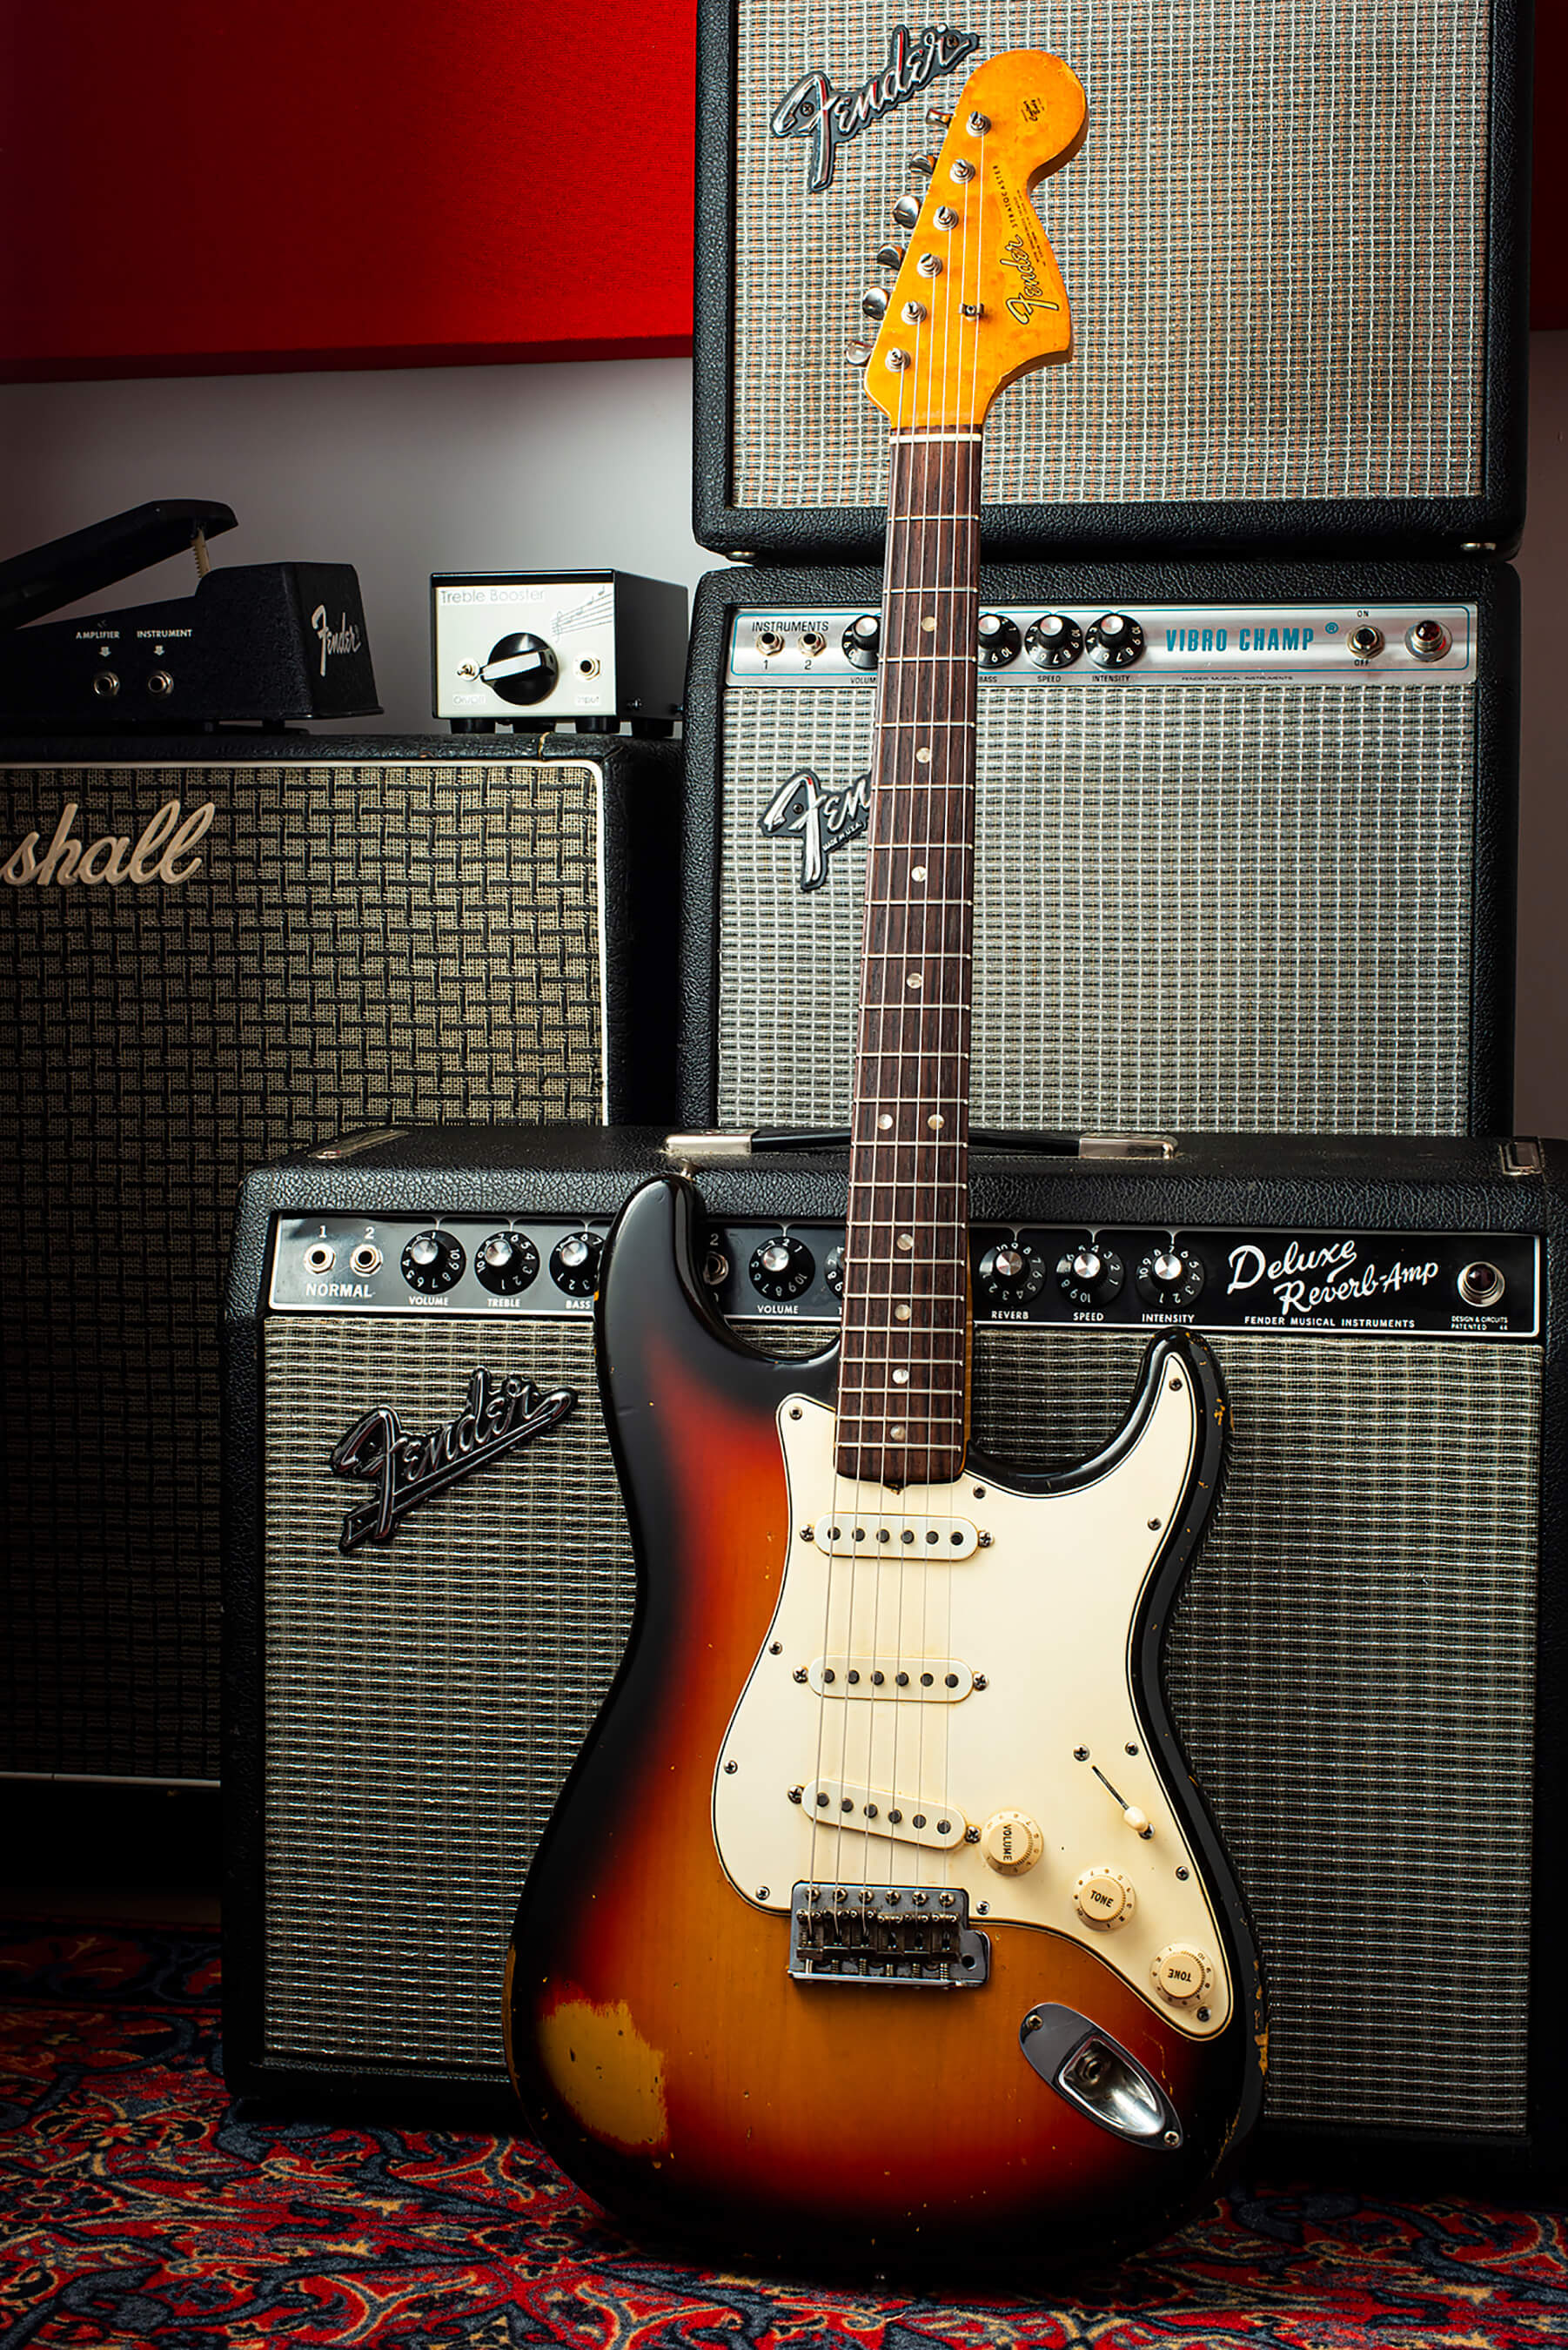 吉尔斯·帕尔默's 1966 Fender Stratocaster